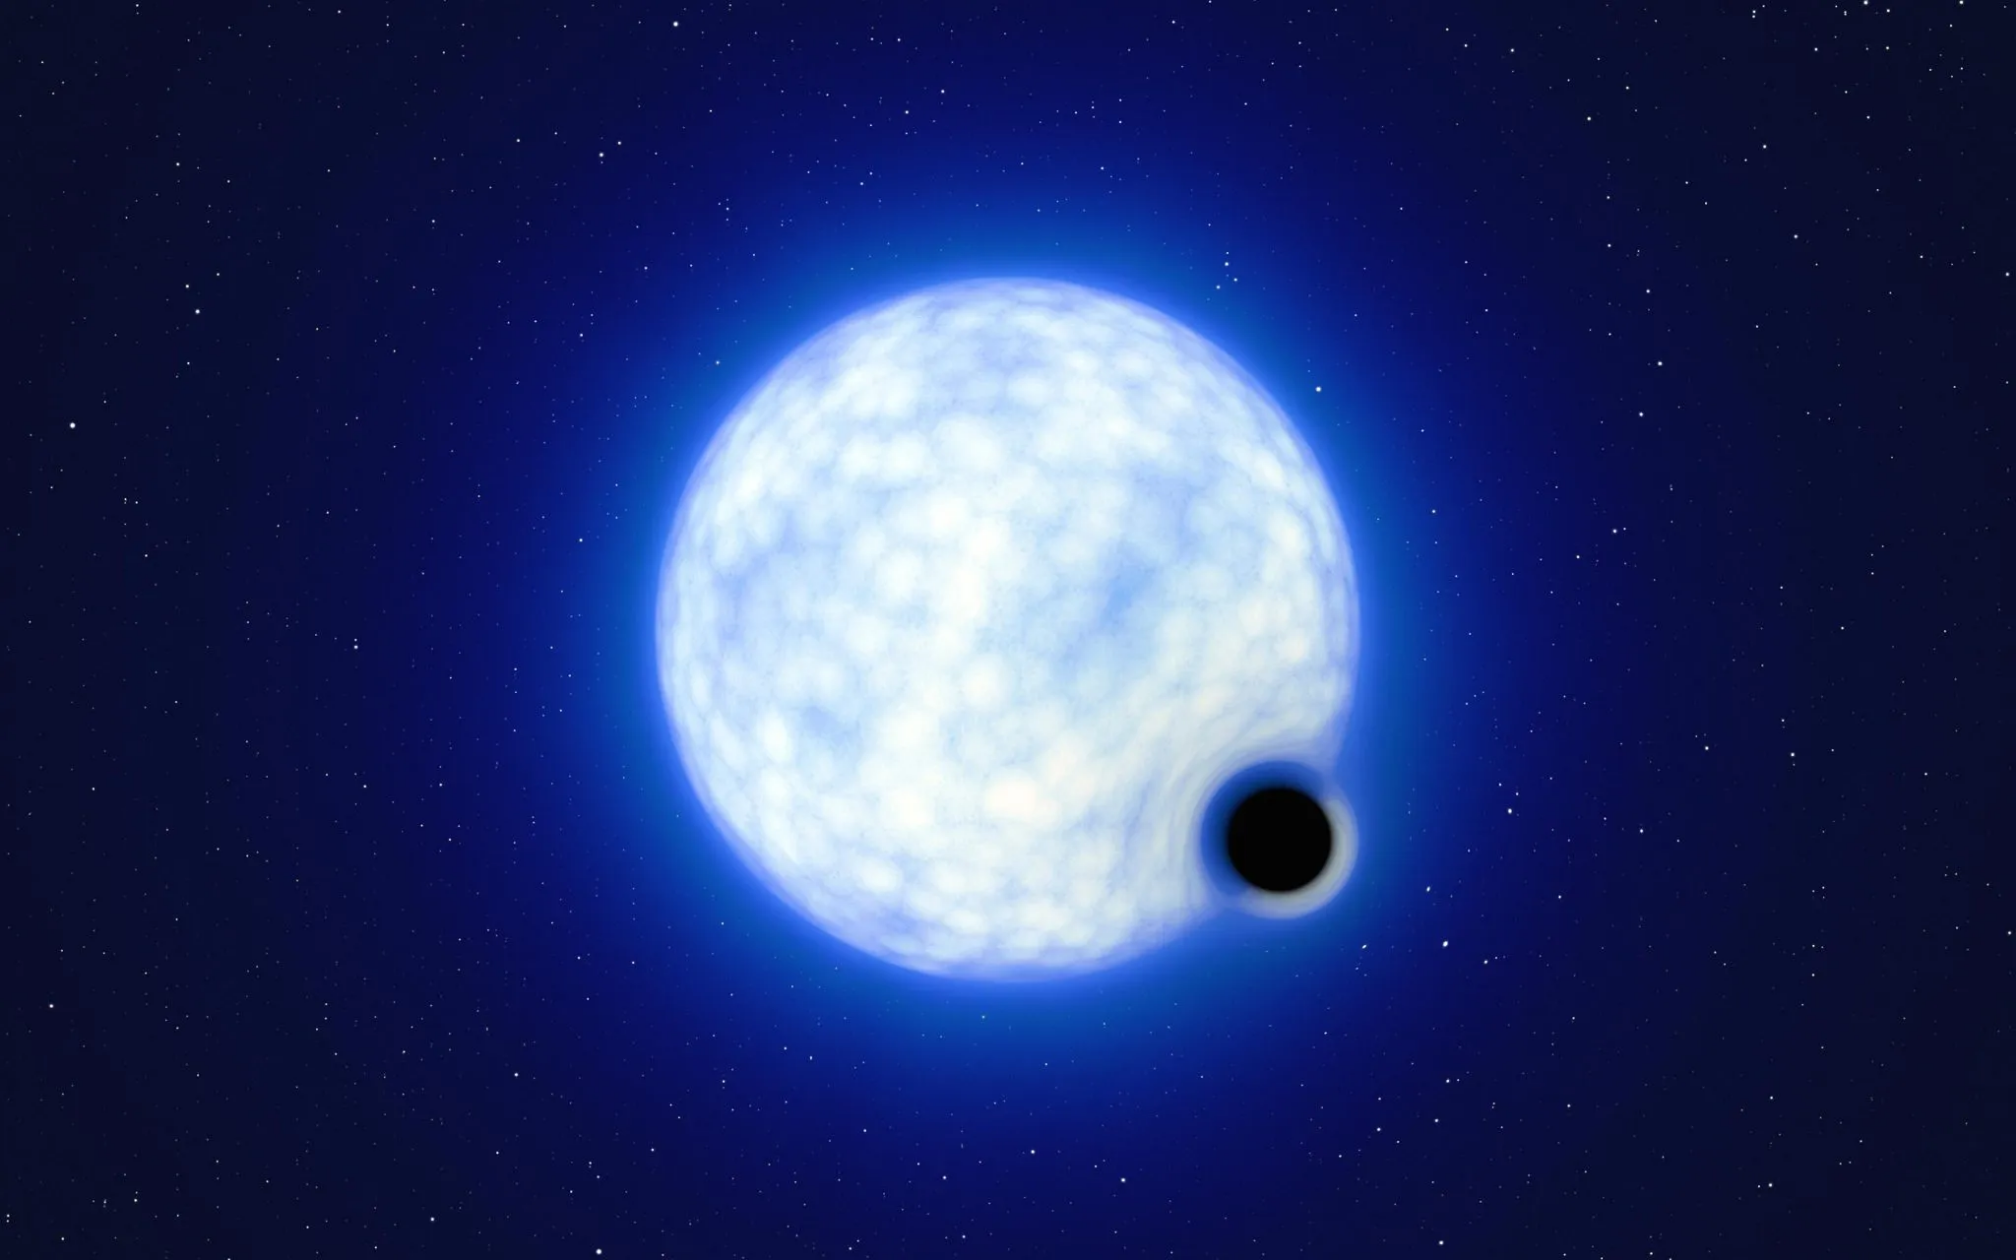 大麦哲伦星系中发现一个“休眠”黑洞